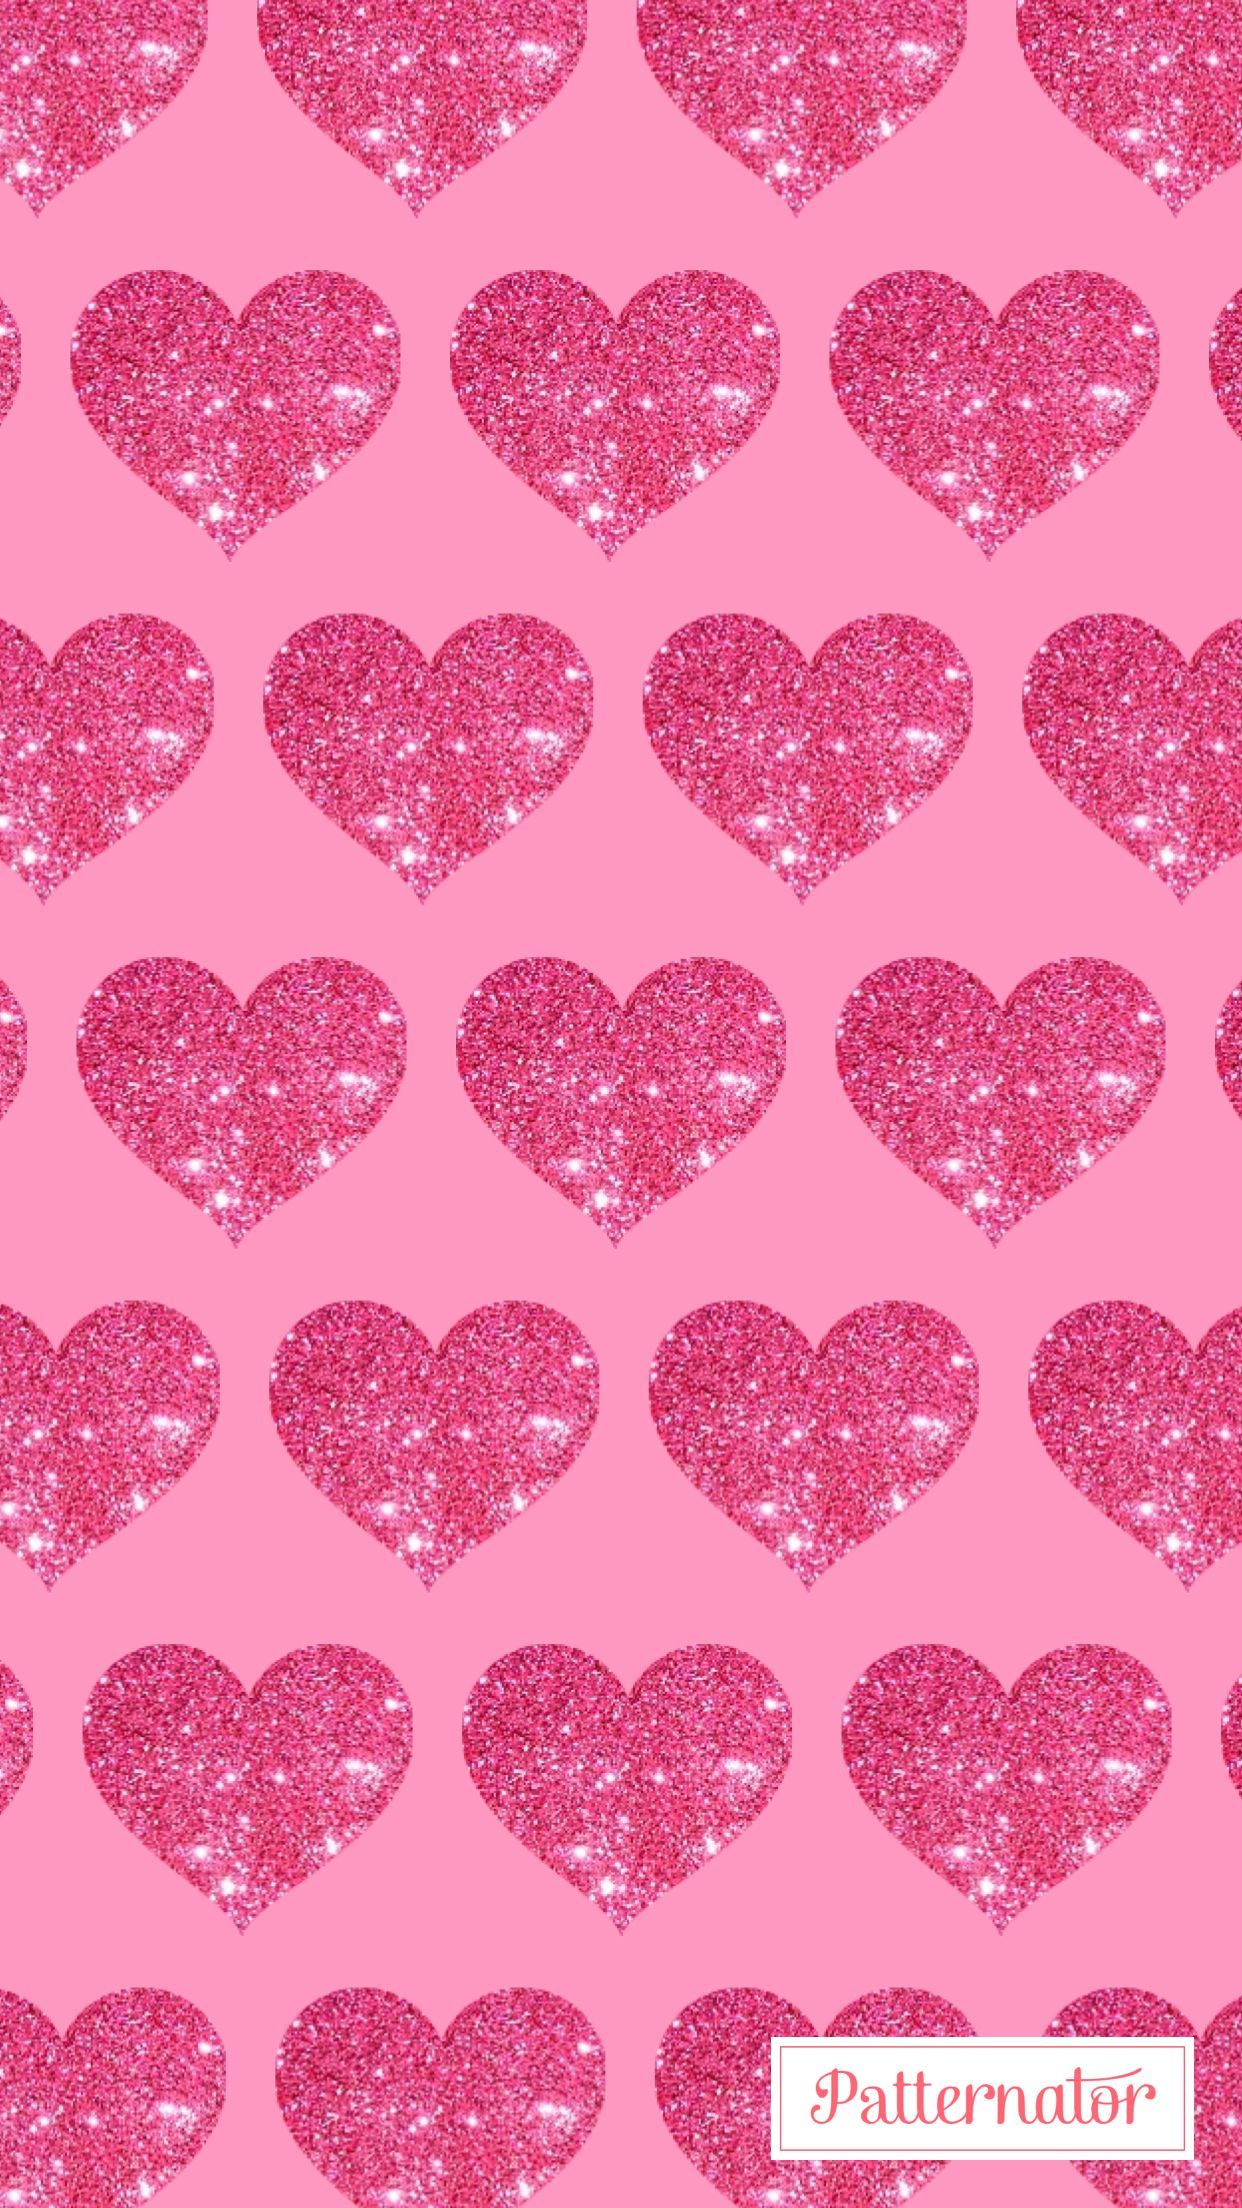 Pink Hearts Galaxy Wallpaper androidwallpaper iphonewallpaper wallpaper  galaxy sparkle gli  Iphone wallpaper vintage Wallpaper iphone cute Heart  wallpaper